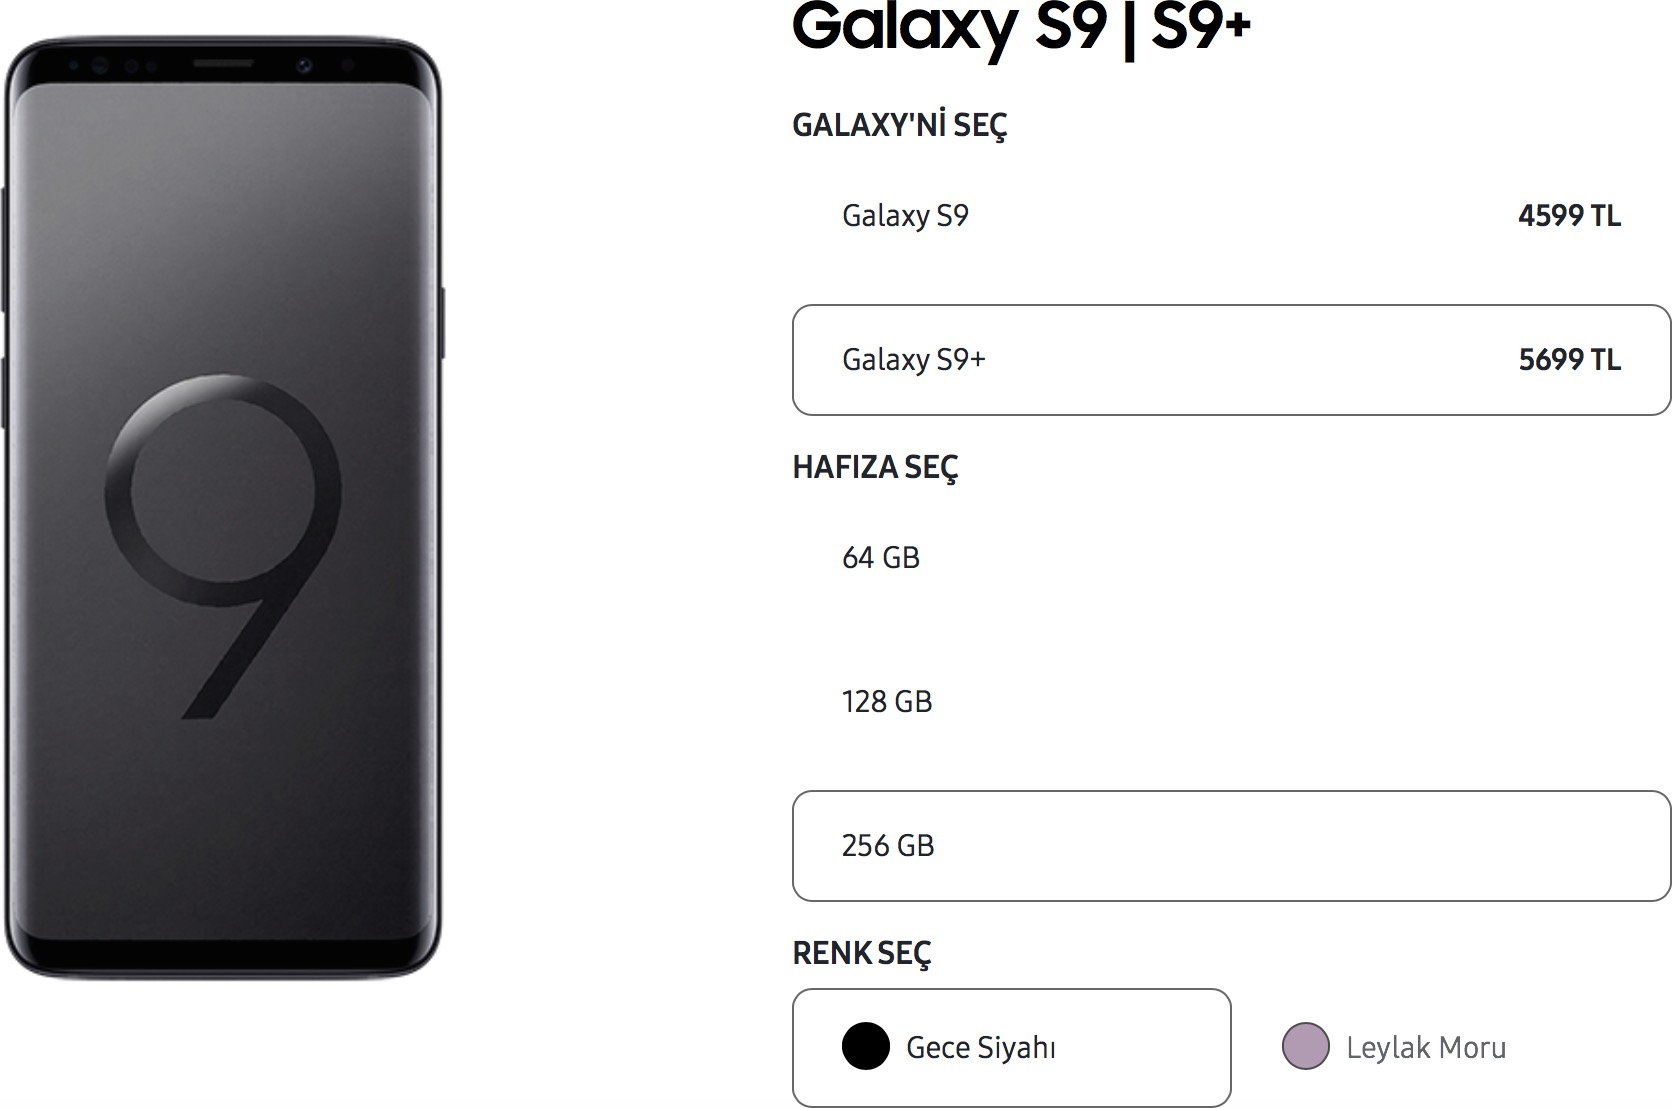 Galaxy S9+ 256 GB Türkiye fiyatı 